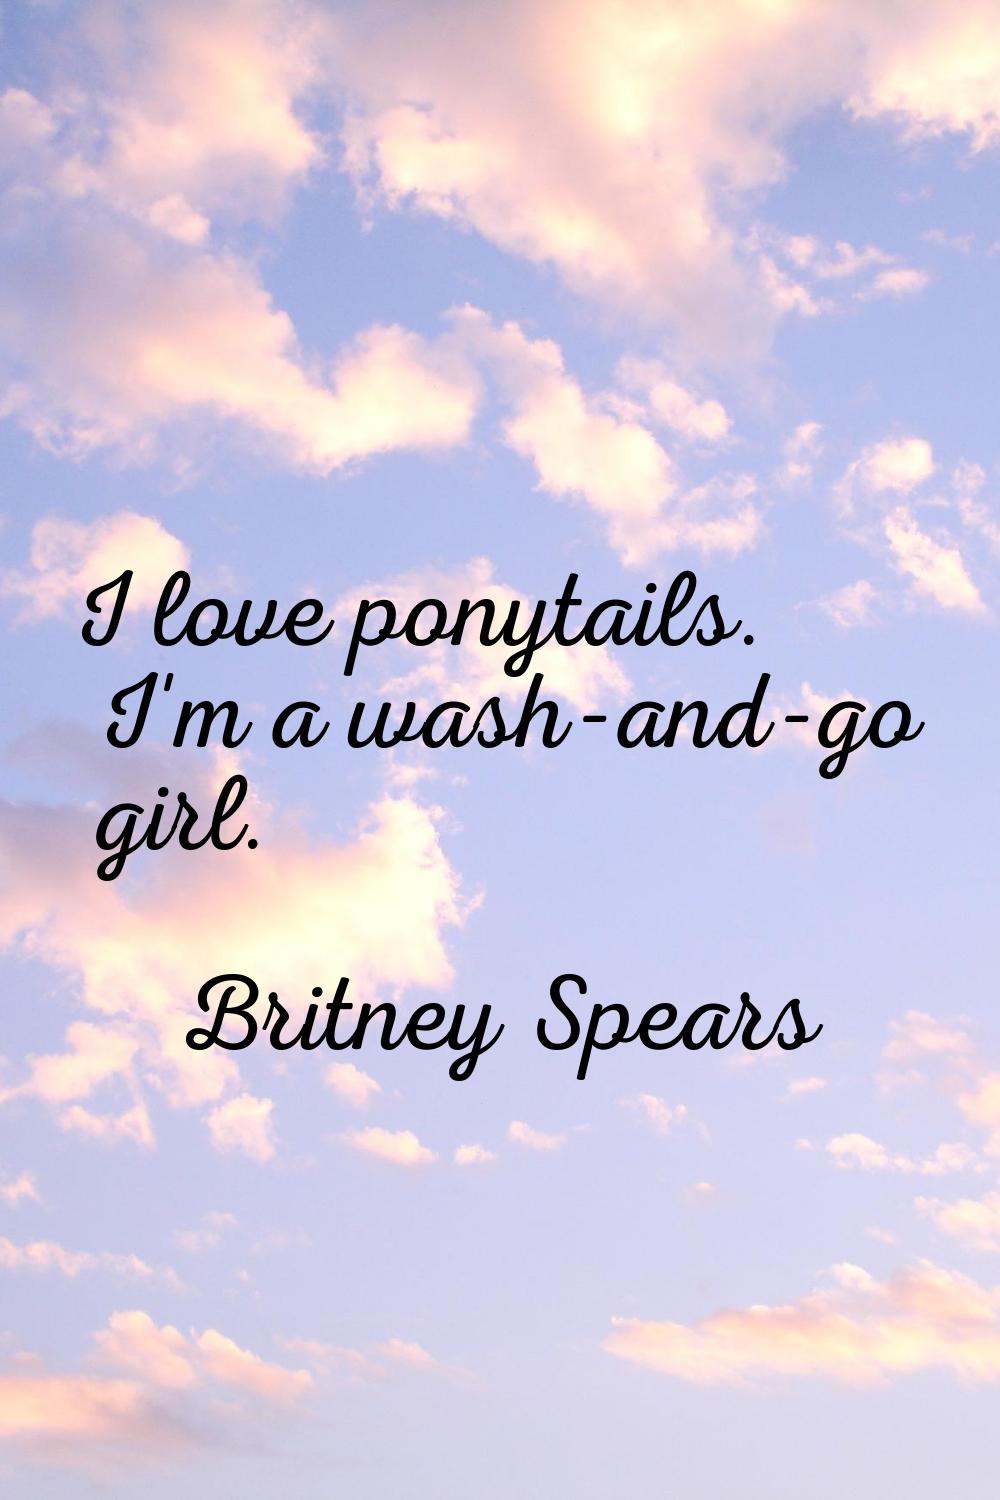 I love ponytails. I'm a wash-and-go girl.